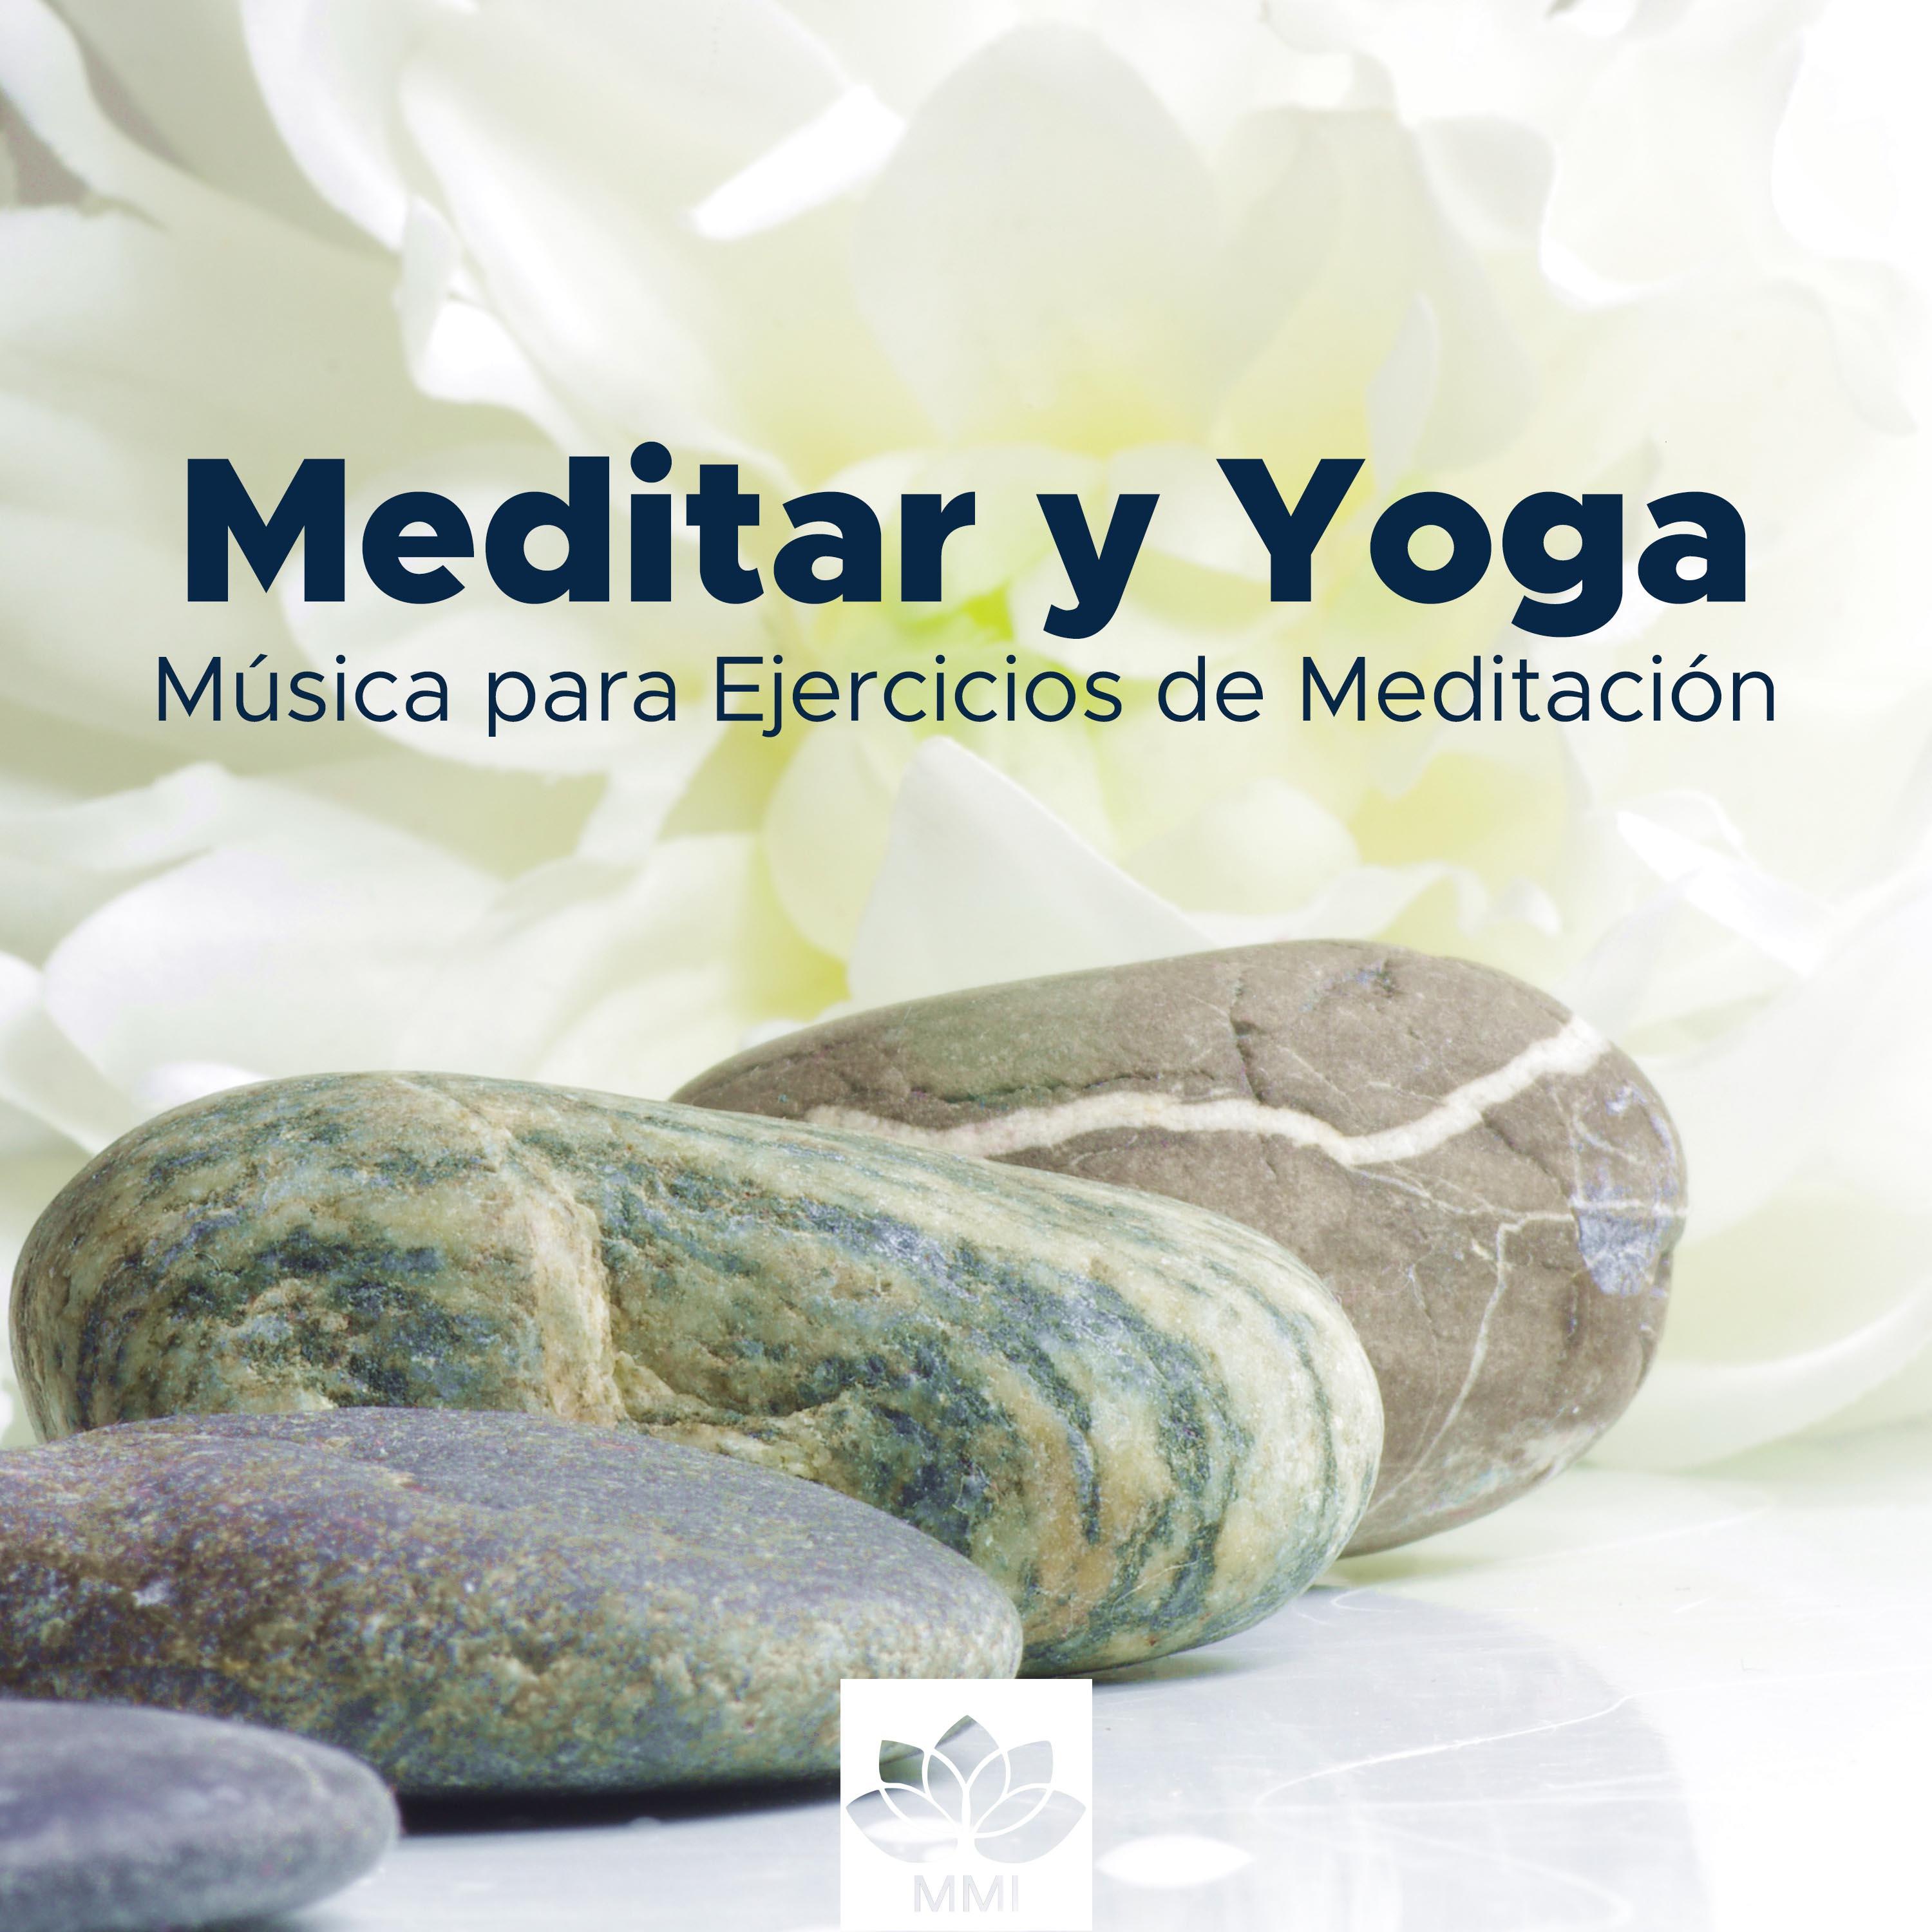 Meditar y Yoga  Musica para Ejercicios de Meditacio n y Relajacio n Profunda